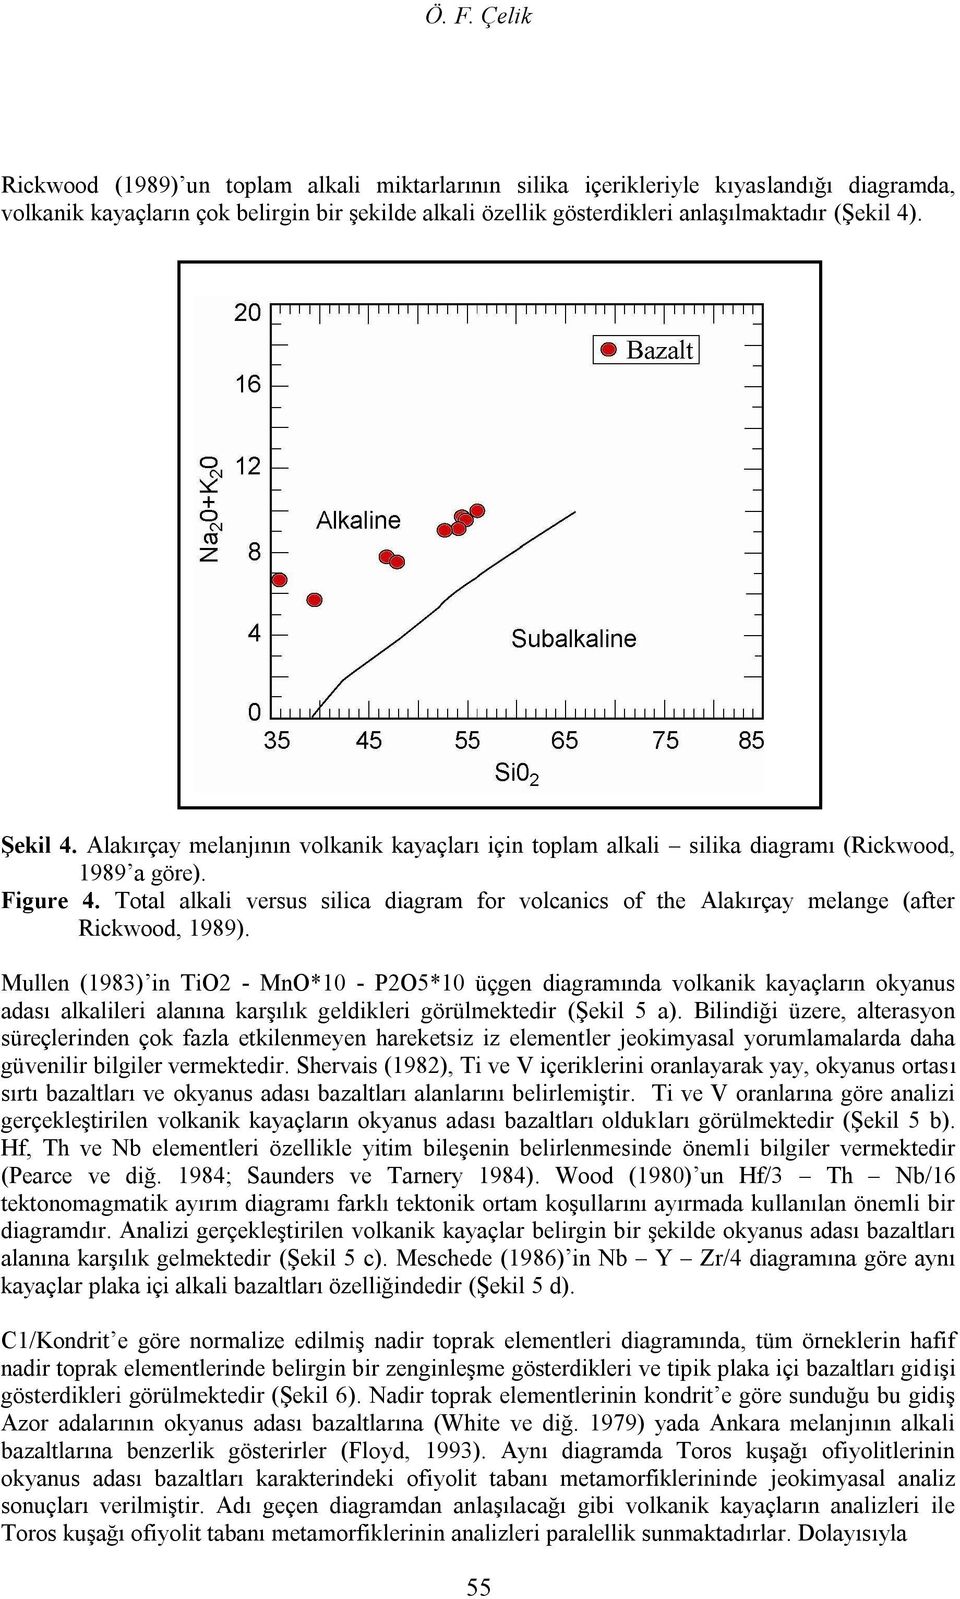 Total alkali versus silica diagram for volcanics of the Alakırçay melange (after Rickwood, 1989).